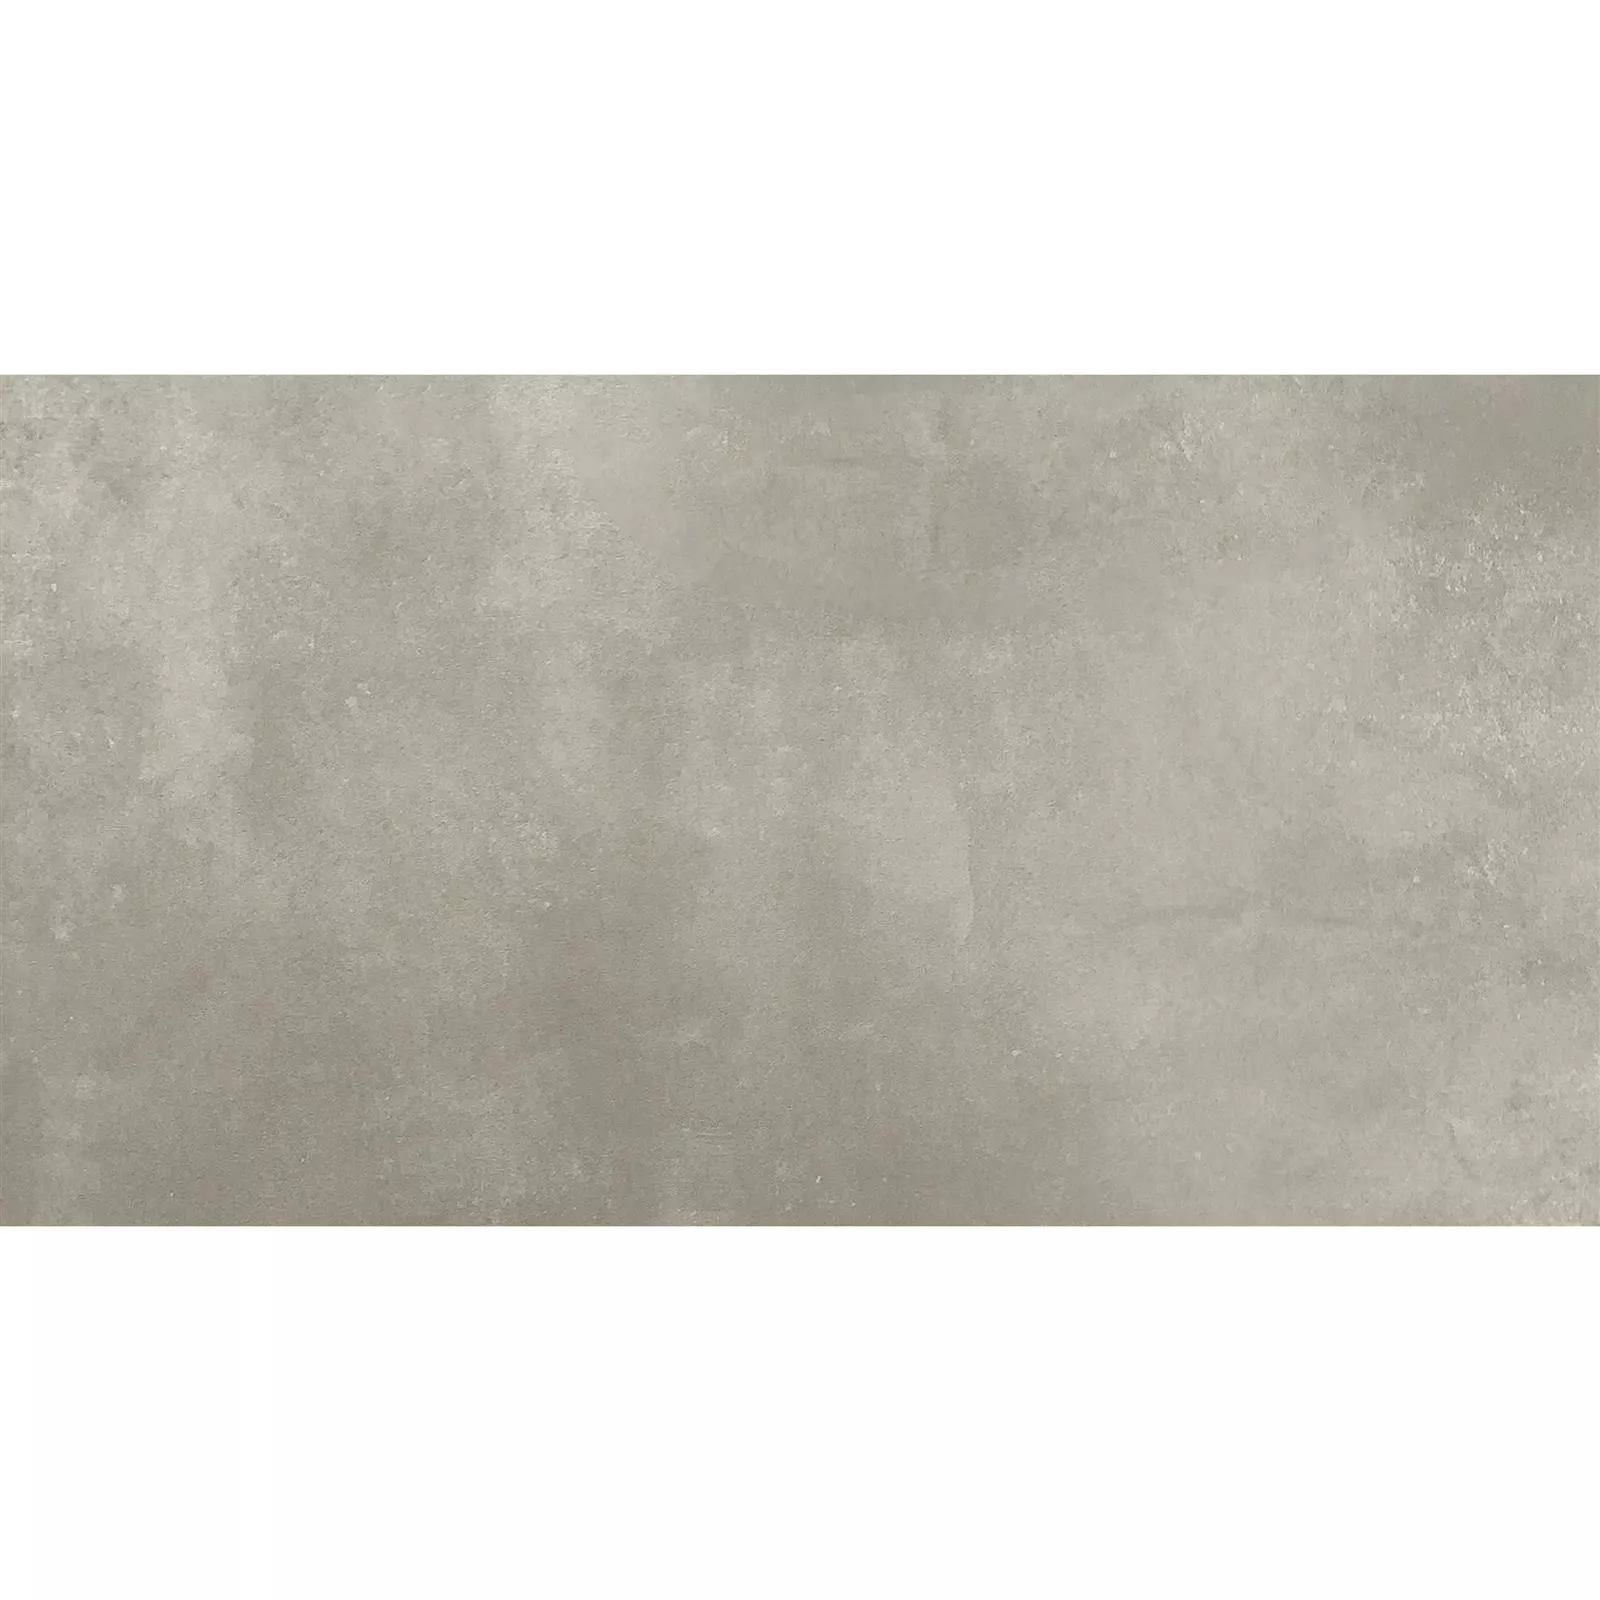 Πλακάκια Δαπέδου Kolossal Διορθώθηκε R10/B Αμμος 30x60x0,7cm